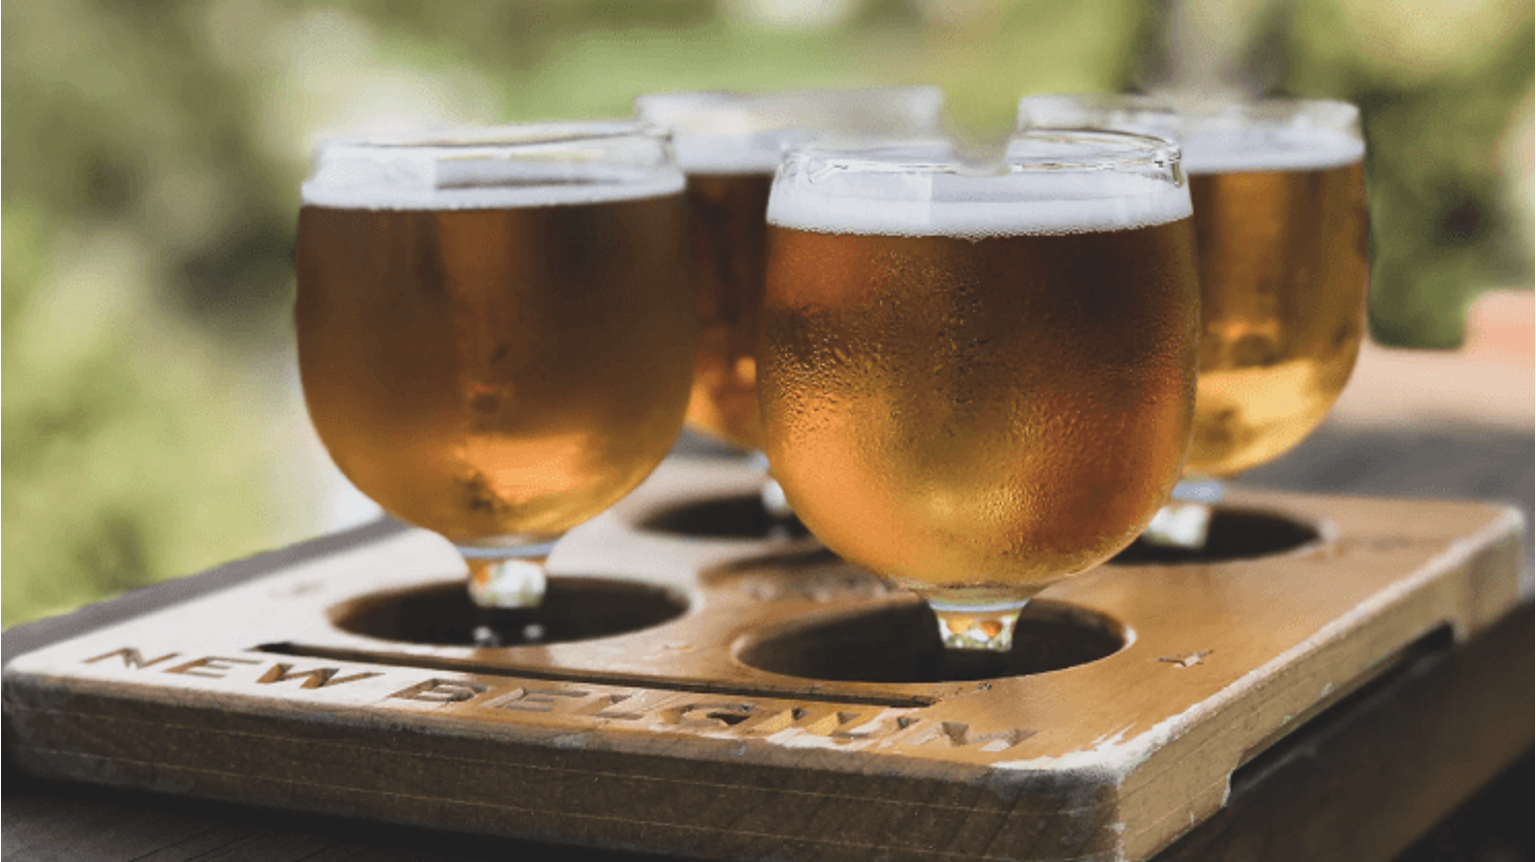 thumbnail for blog article named: Wat is het verschil tussen dubbel en tripel bier?